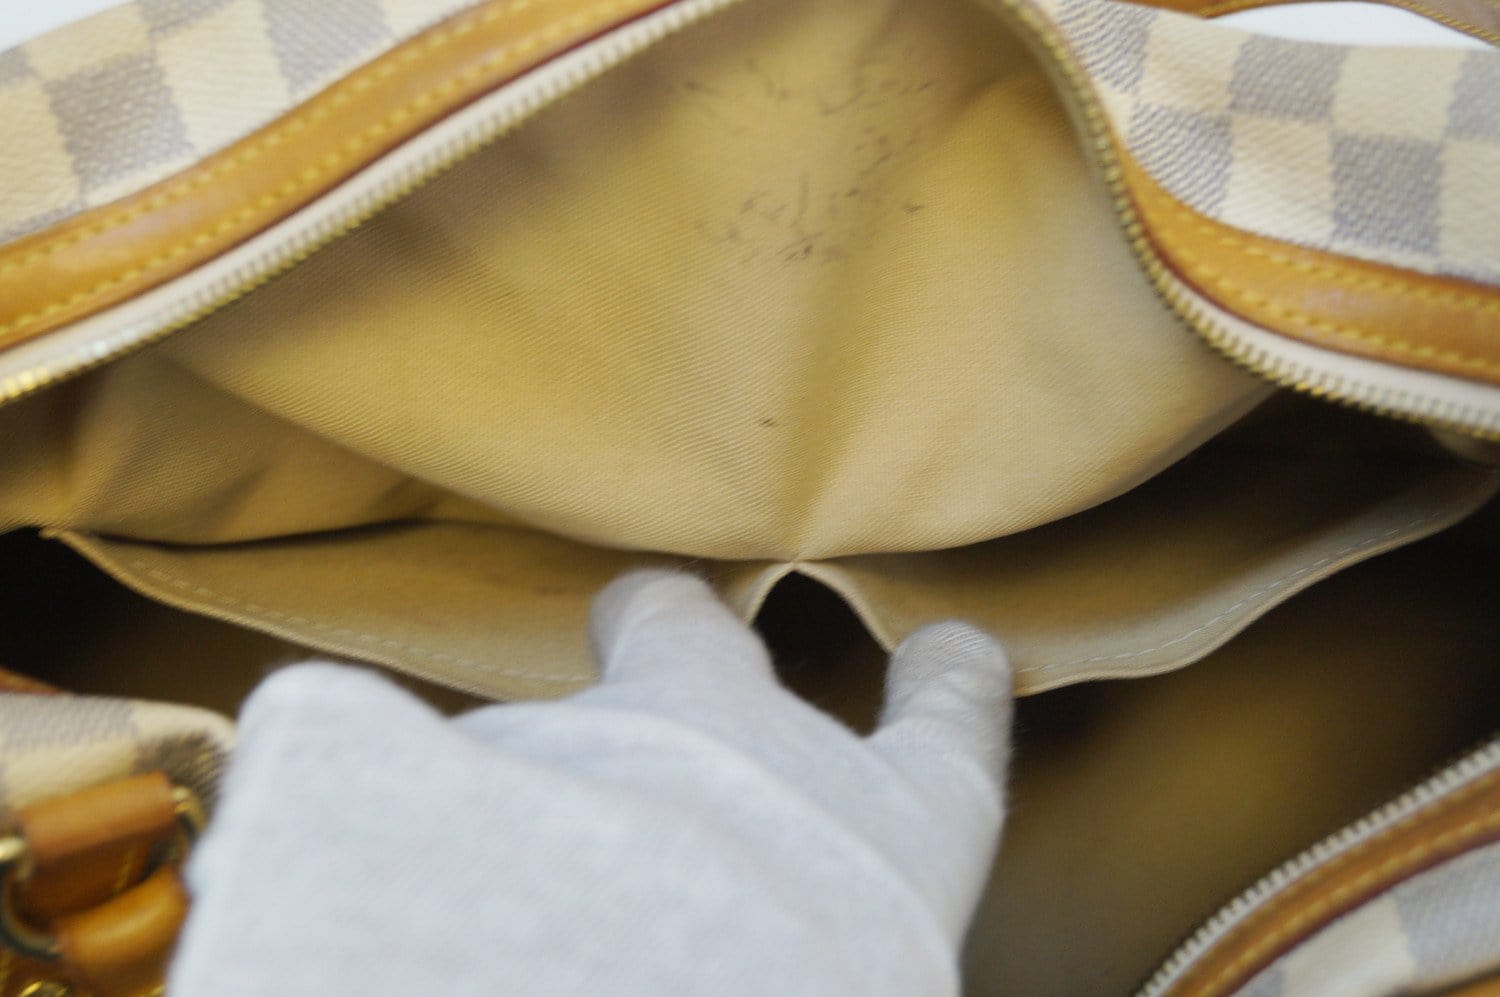 Louis Vuitton, Bags, Soldlouis Vuitton Rare Damier Azur Stresa Pm Bag